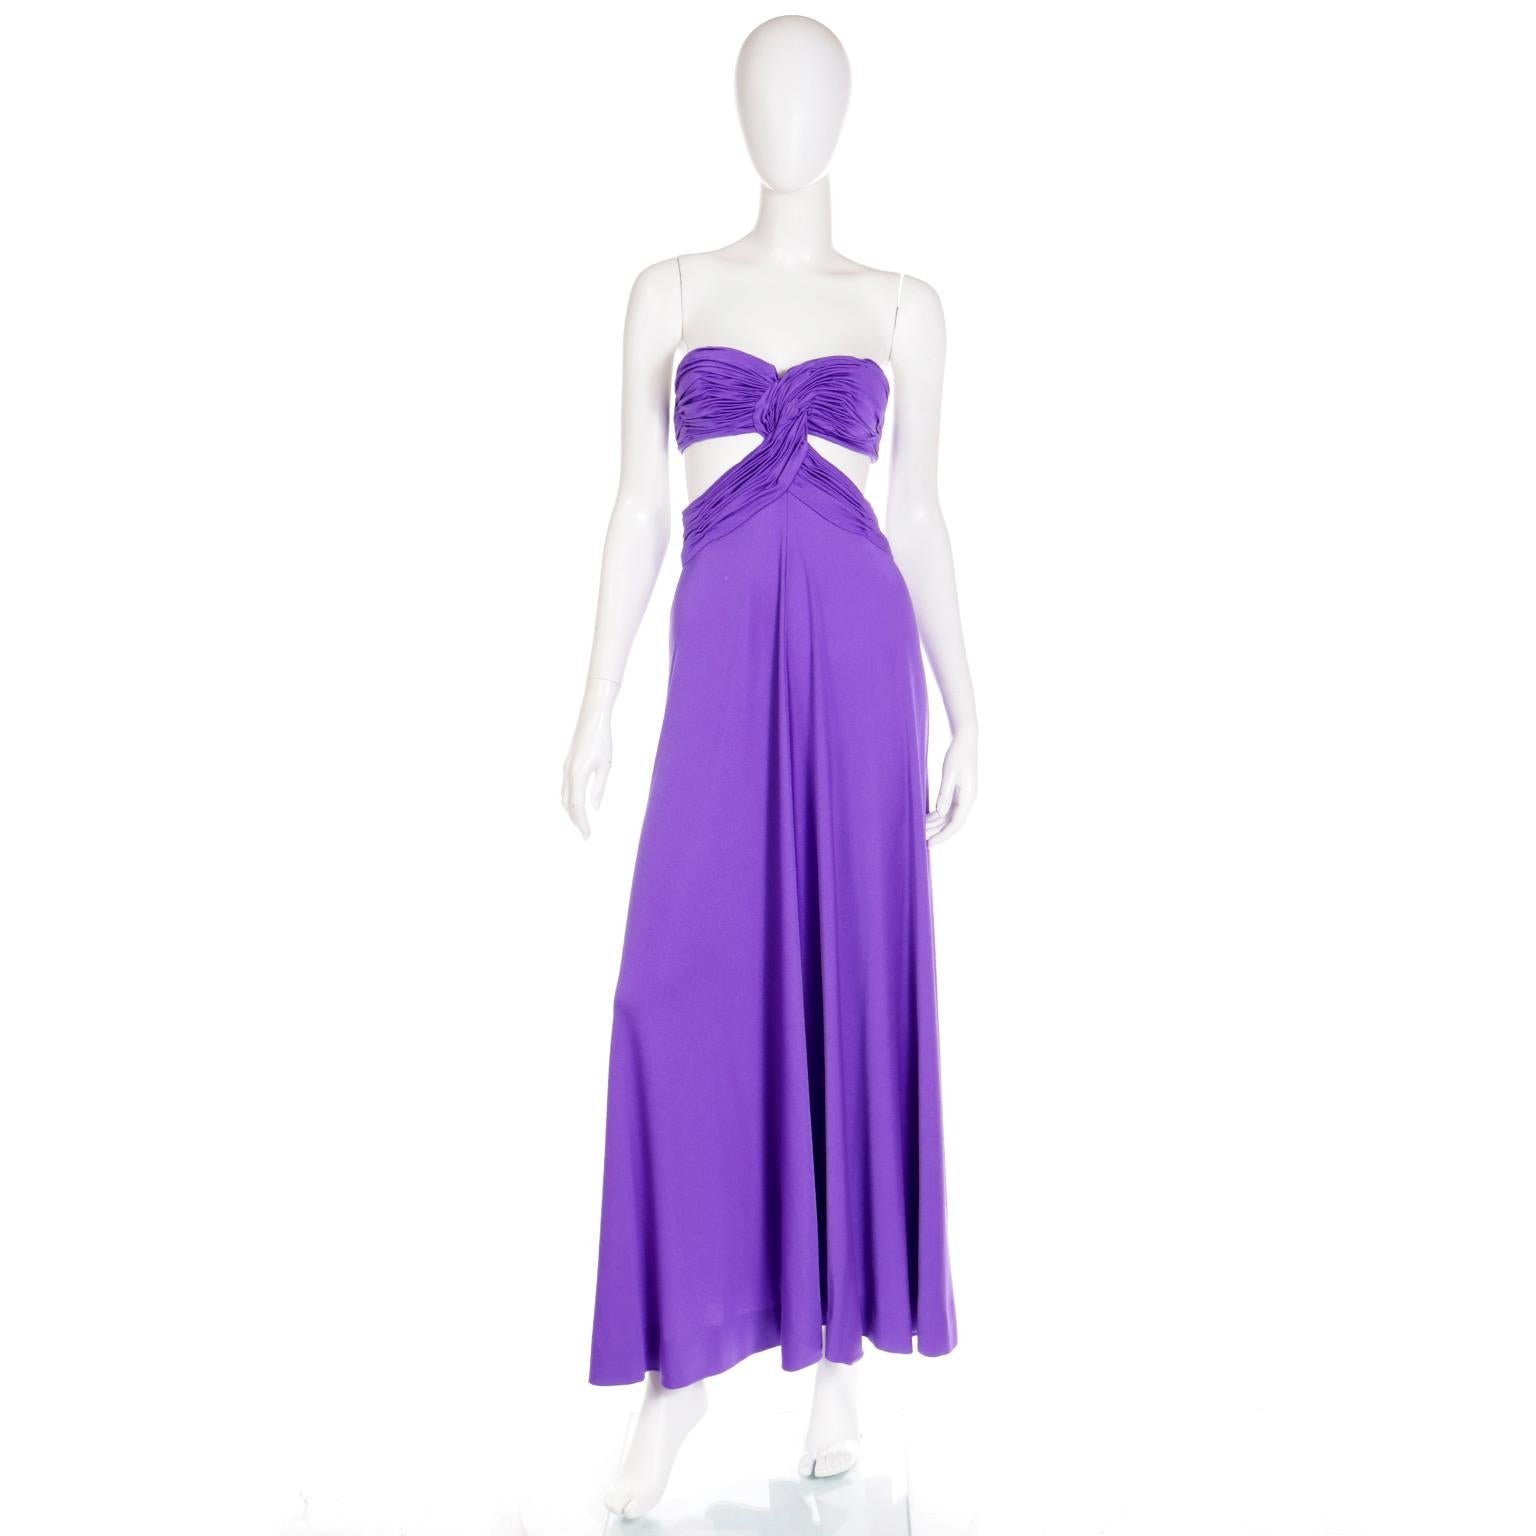 Cette sensationnelle robe de soirée bustier en jersey violet Loris Azzaro vintage est tellement incroyable !  Cette robe présente de nombreux détails étonnants, notamment un corsage finement plissé de type soutien-gorge. Le plissé descend jusqu'à la